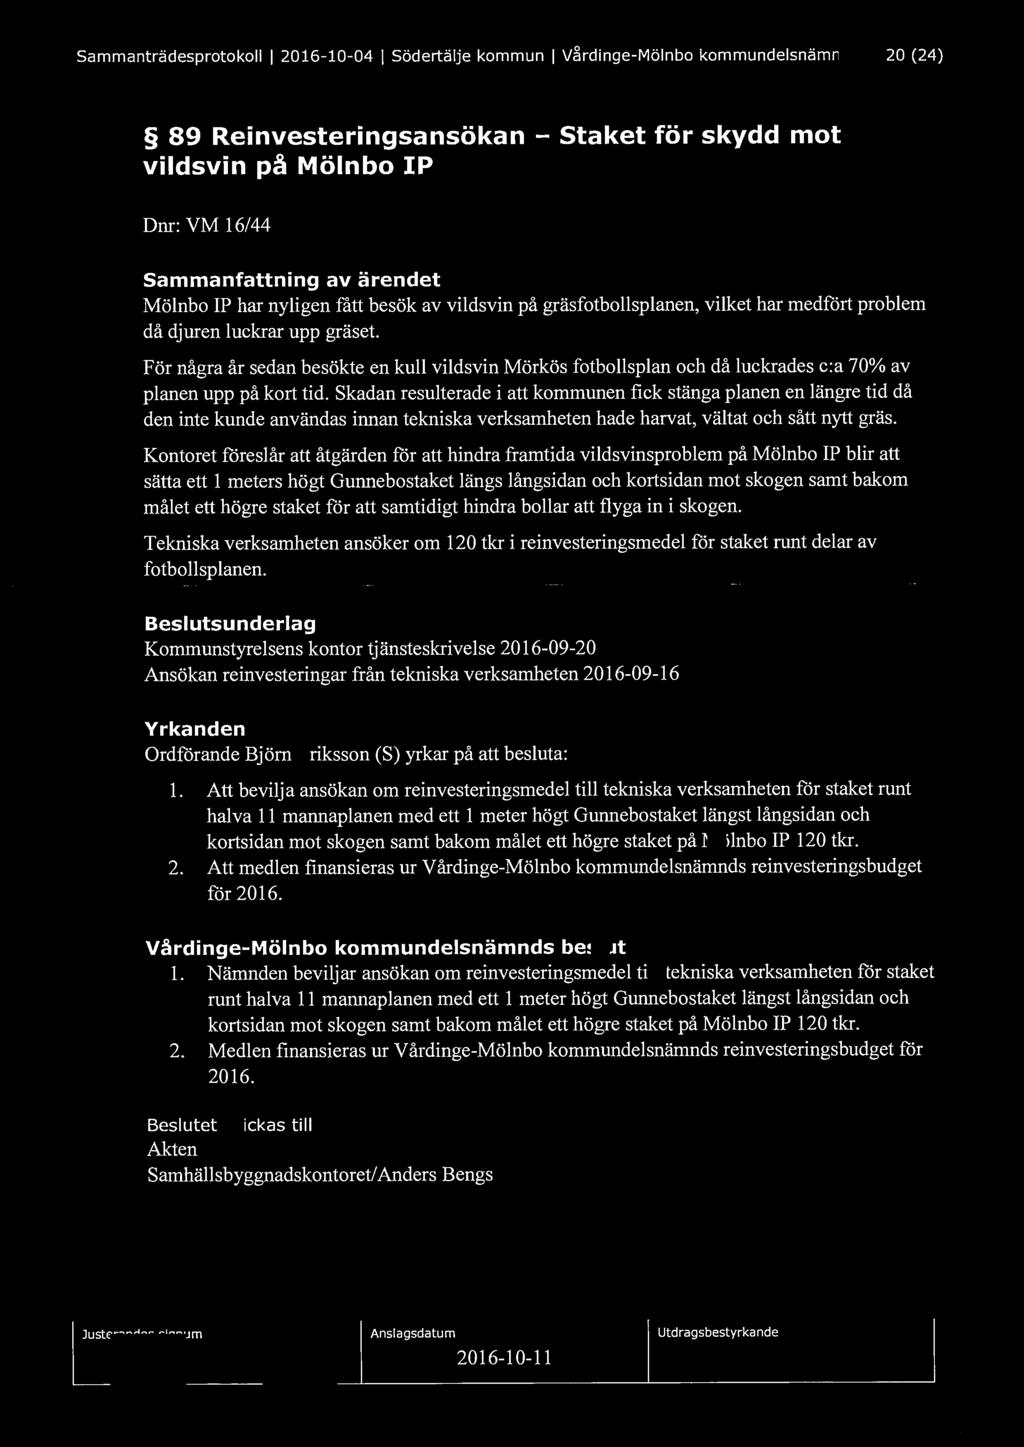 Sammanträdesprotokoll l 2016-10-04 l Södertälje kommun l Vårdinge-Mölnbo kommundelsnämnd 20 (24) 89 Reinvesteringsansökan - Staket för skydd mot vildsvin på Mölnbo IP Dnr: VM 16/44 Sammanfattning av